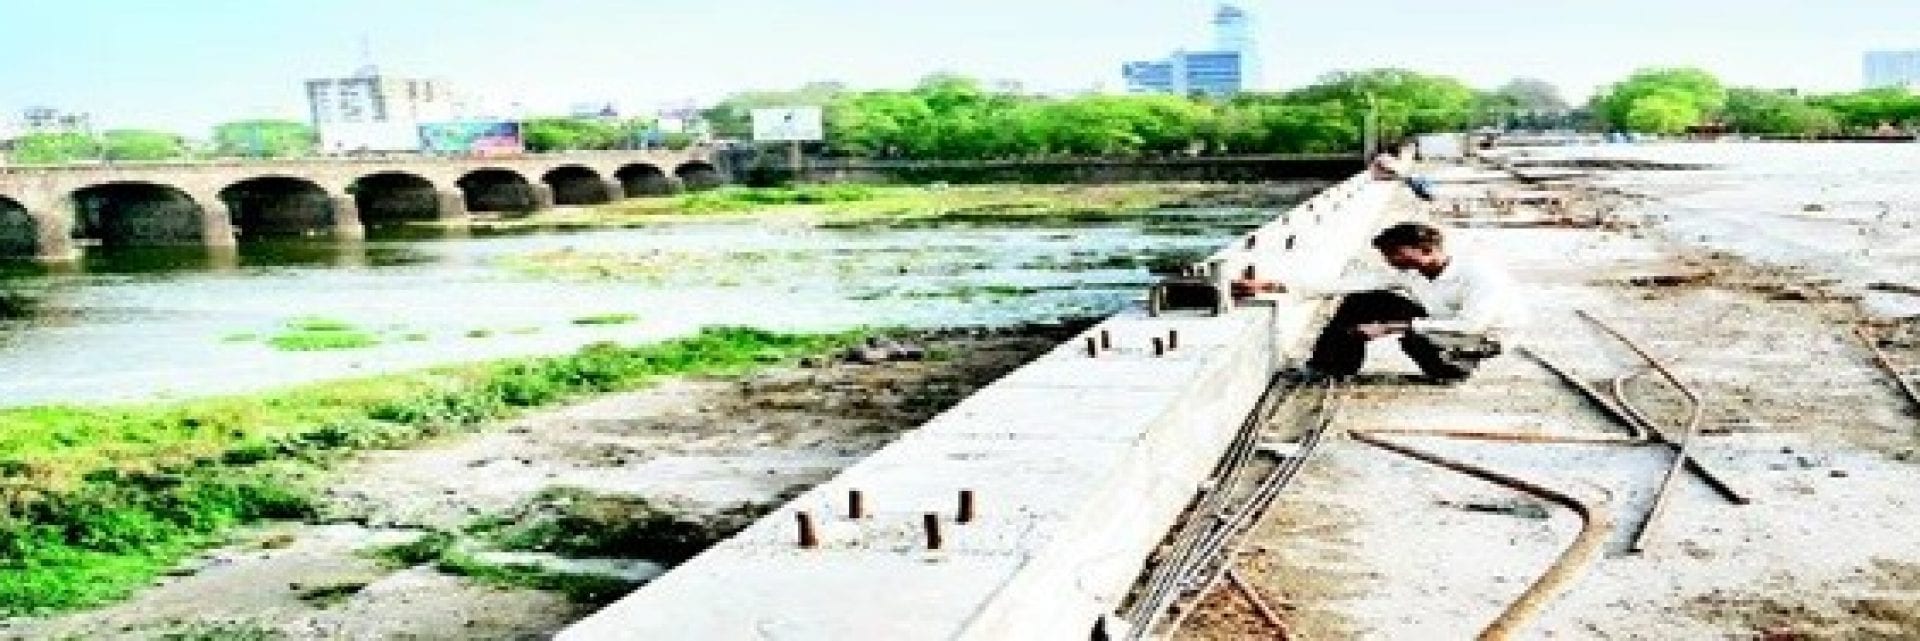 Hilti jobsite reference bund garden river bridge Pune India